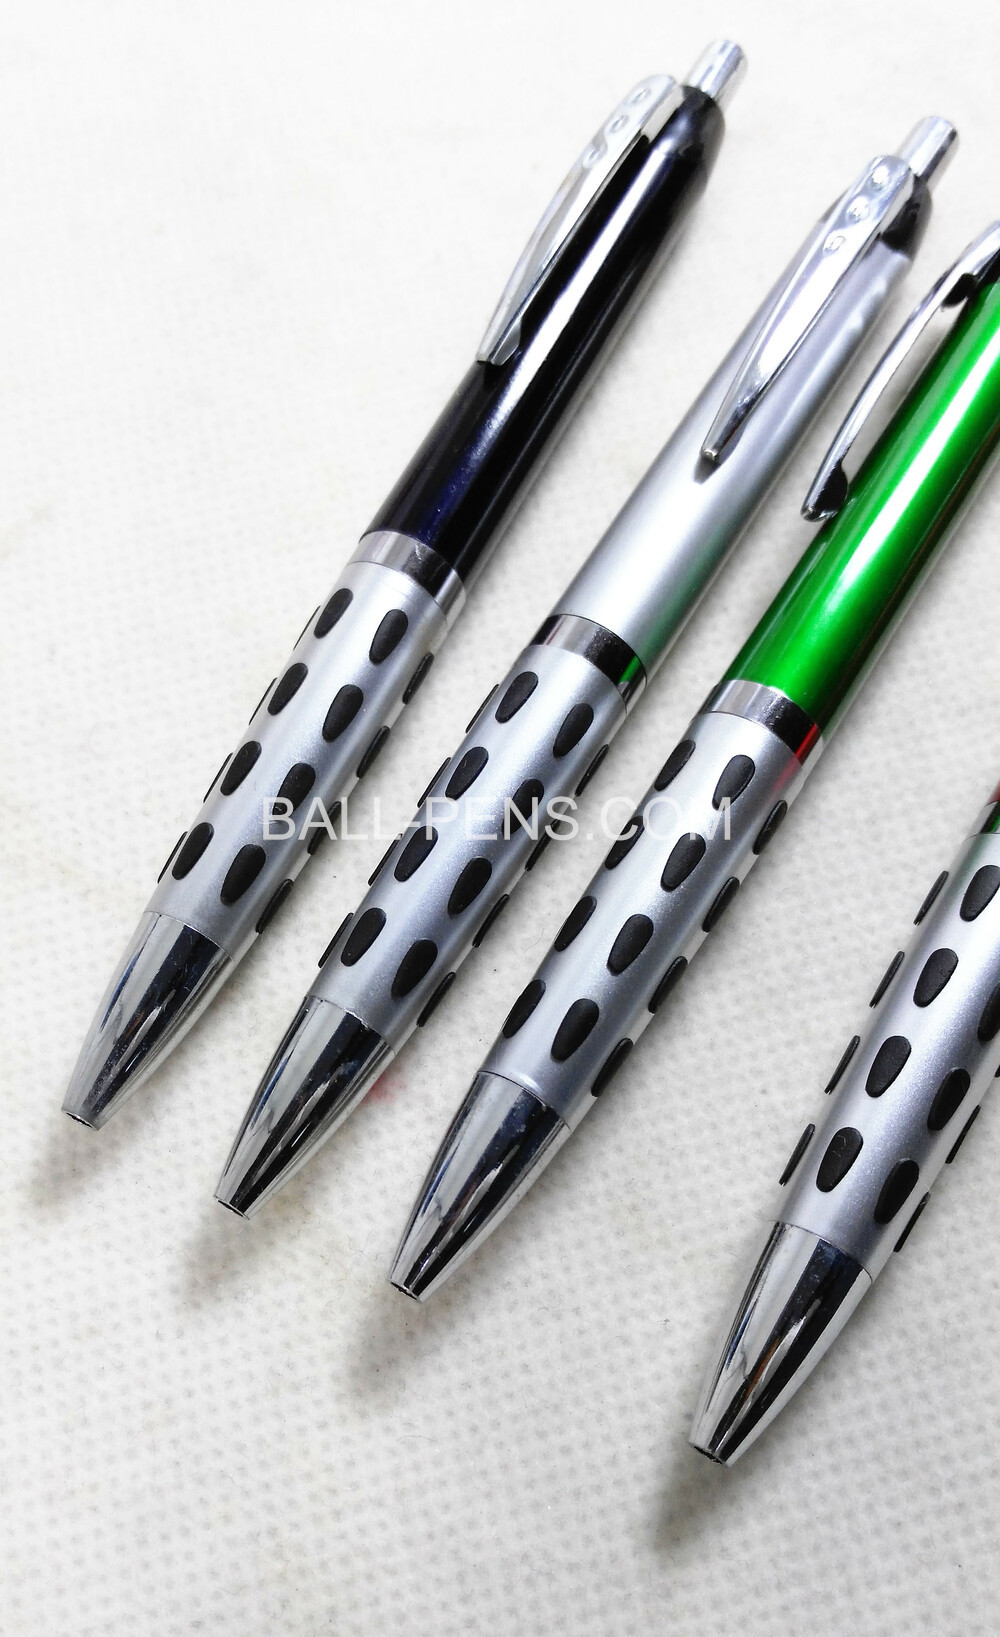 custom-ball-pens_IMG_20201212_171805.jpg